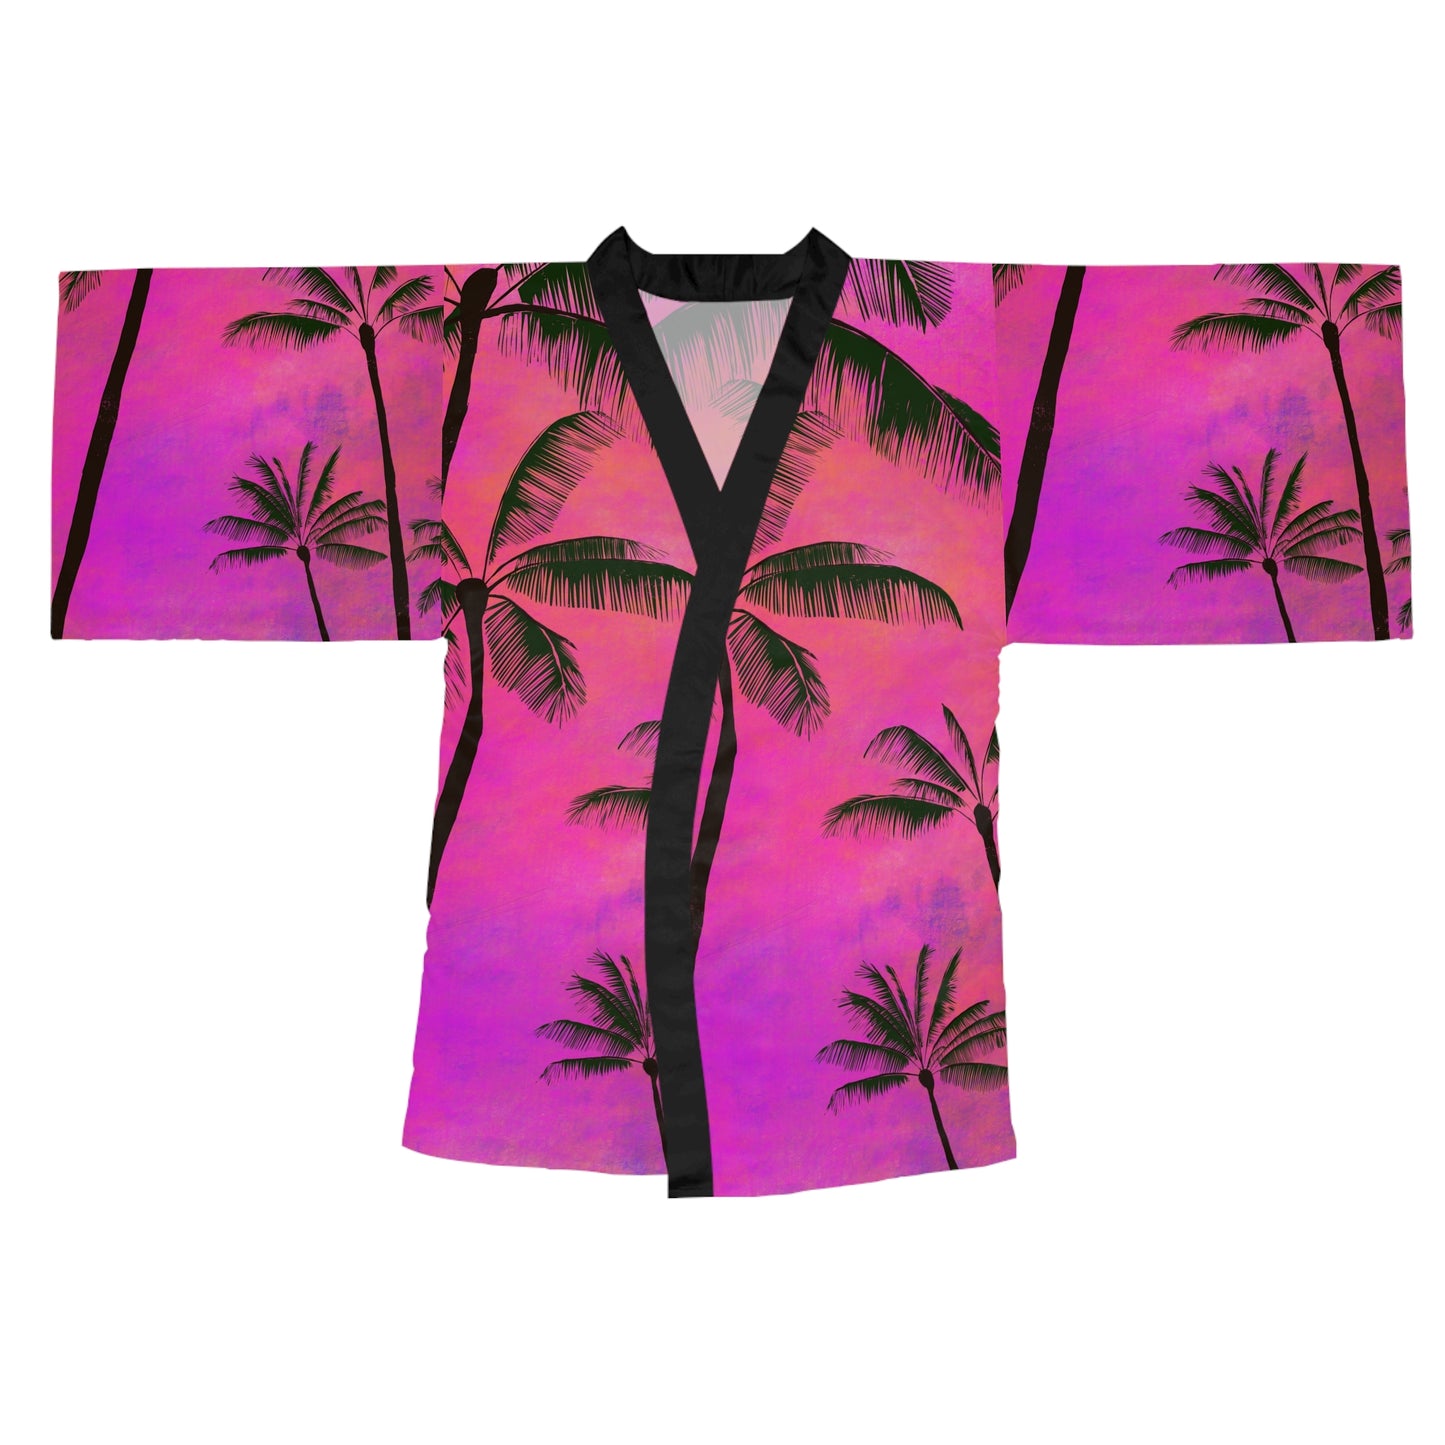 Tropical Long Sleeve Kimono Robe